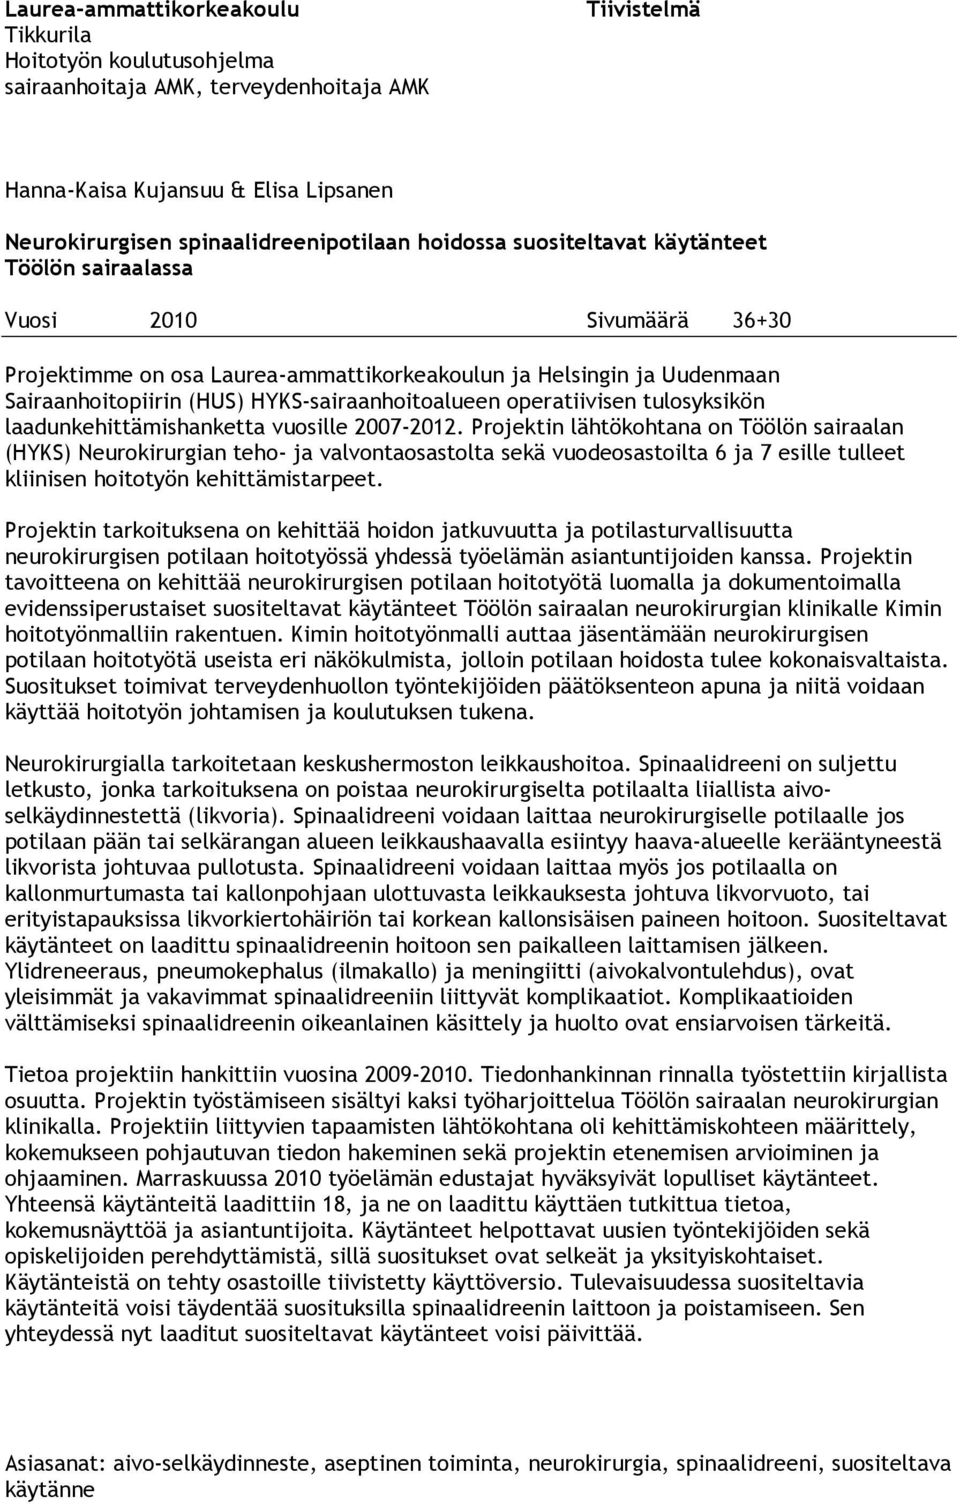 HYKS-sairaanhoitoalueen operatiivisen tulosyksikön laadunkehittämishanketta vuosille 2007-2012.